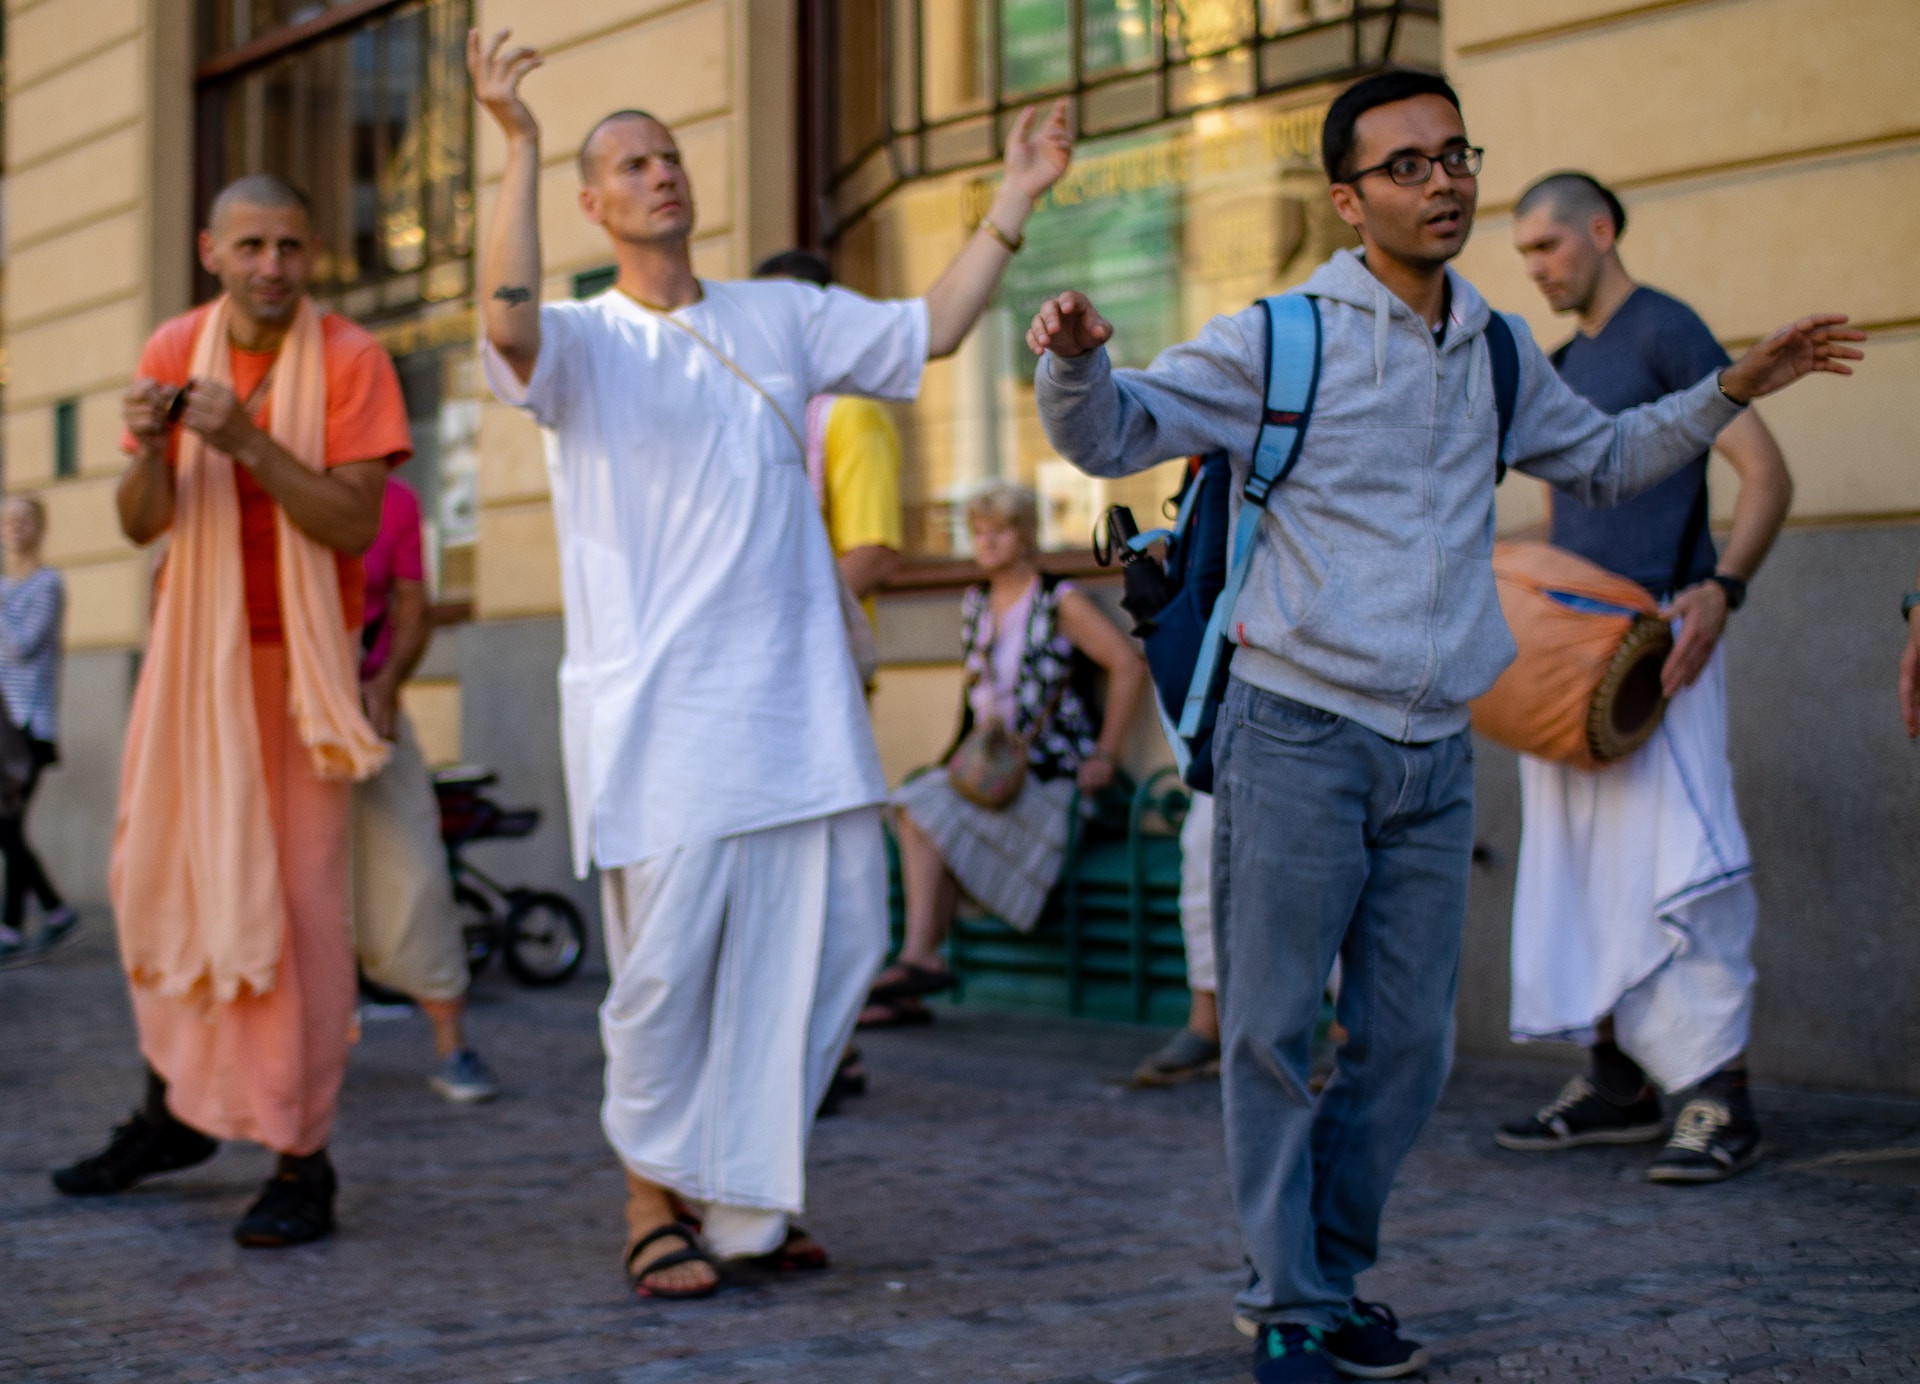 Hare Krišna privablja nove vernike s petjem in plesom